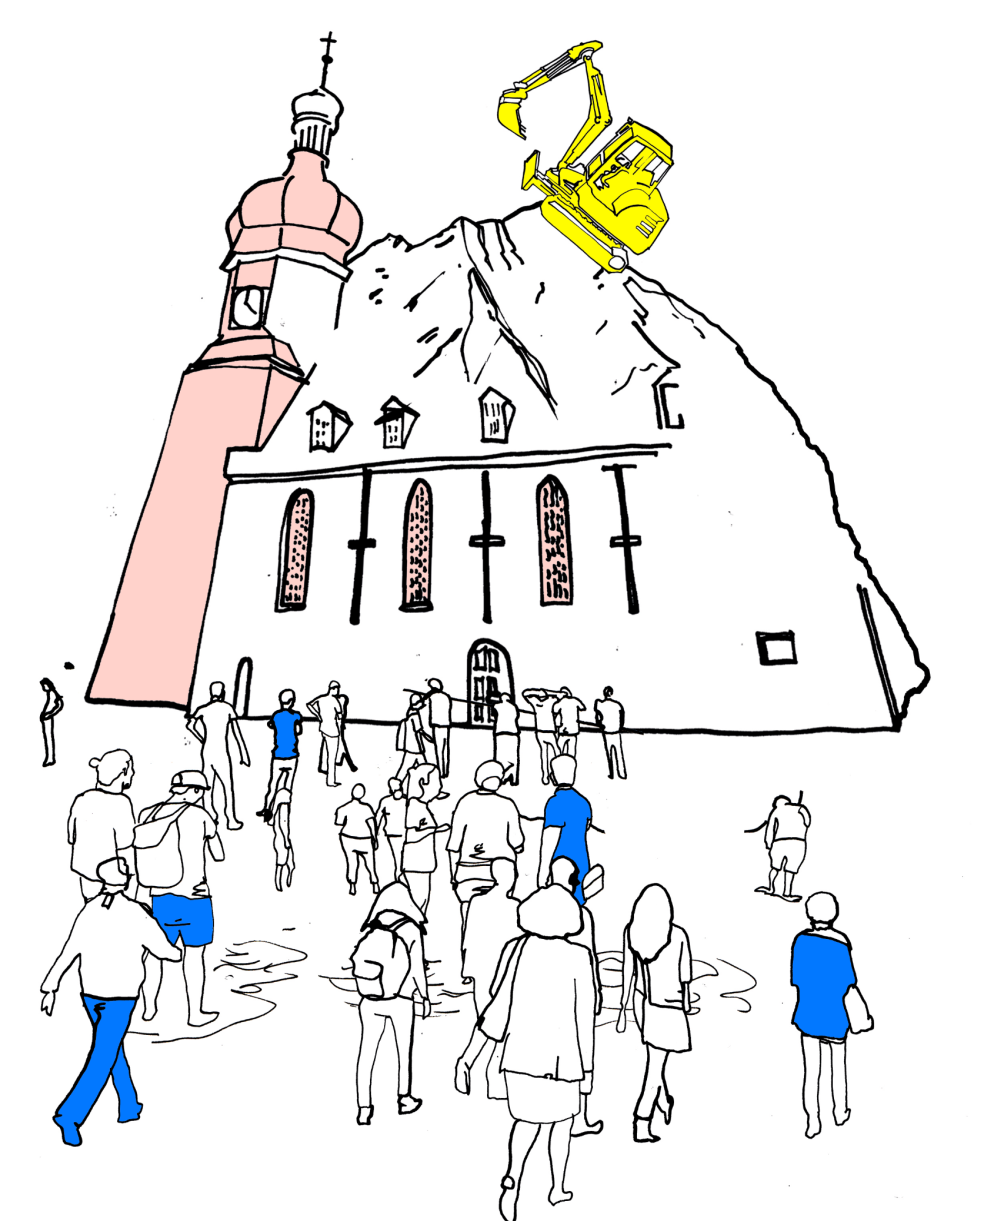 Illustration welche Menschen zeigt, die in eine Kirche hinein gehen. Auf dem Dach der Kirche steht ein Bagger.